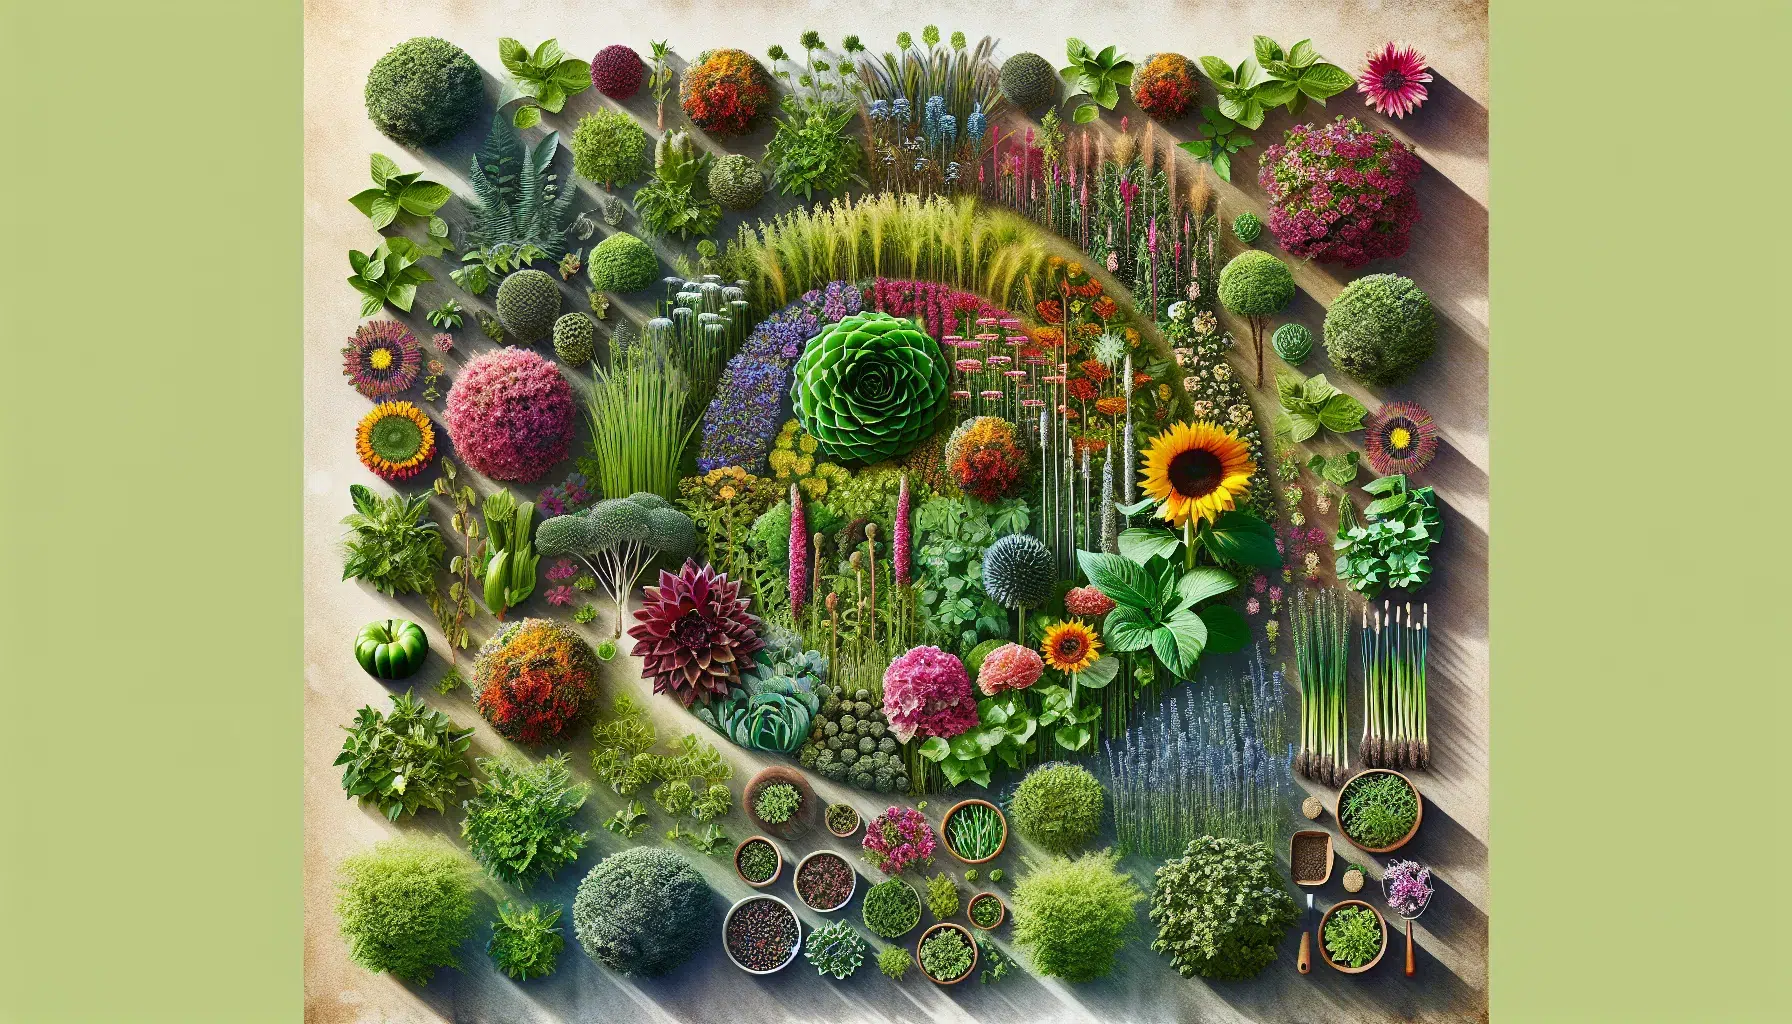 Imagen de un huerto sostenible con plantas perennes saludables y coloridas, mostrando variedad y armonía en el cultivo.